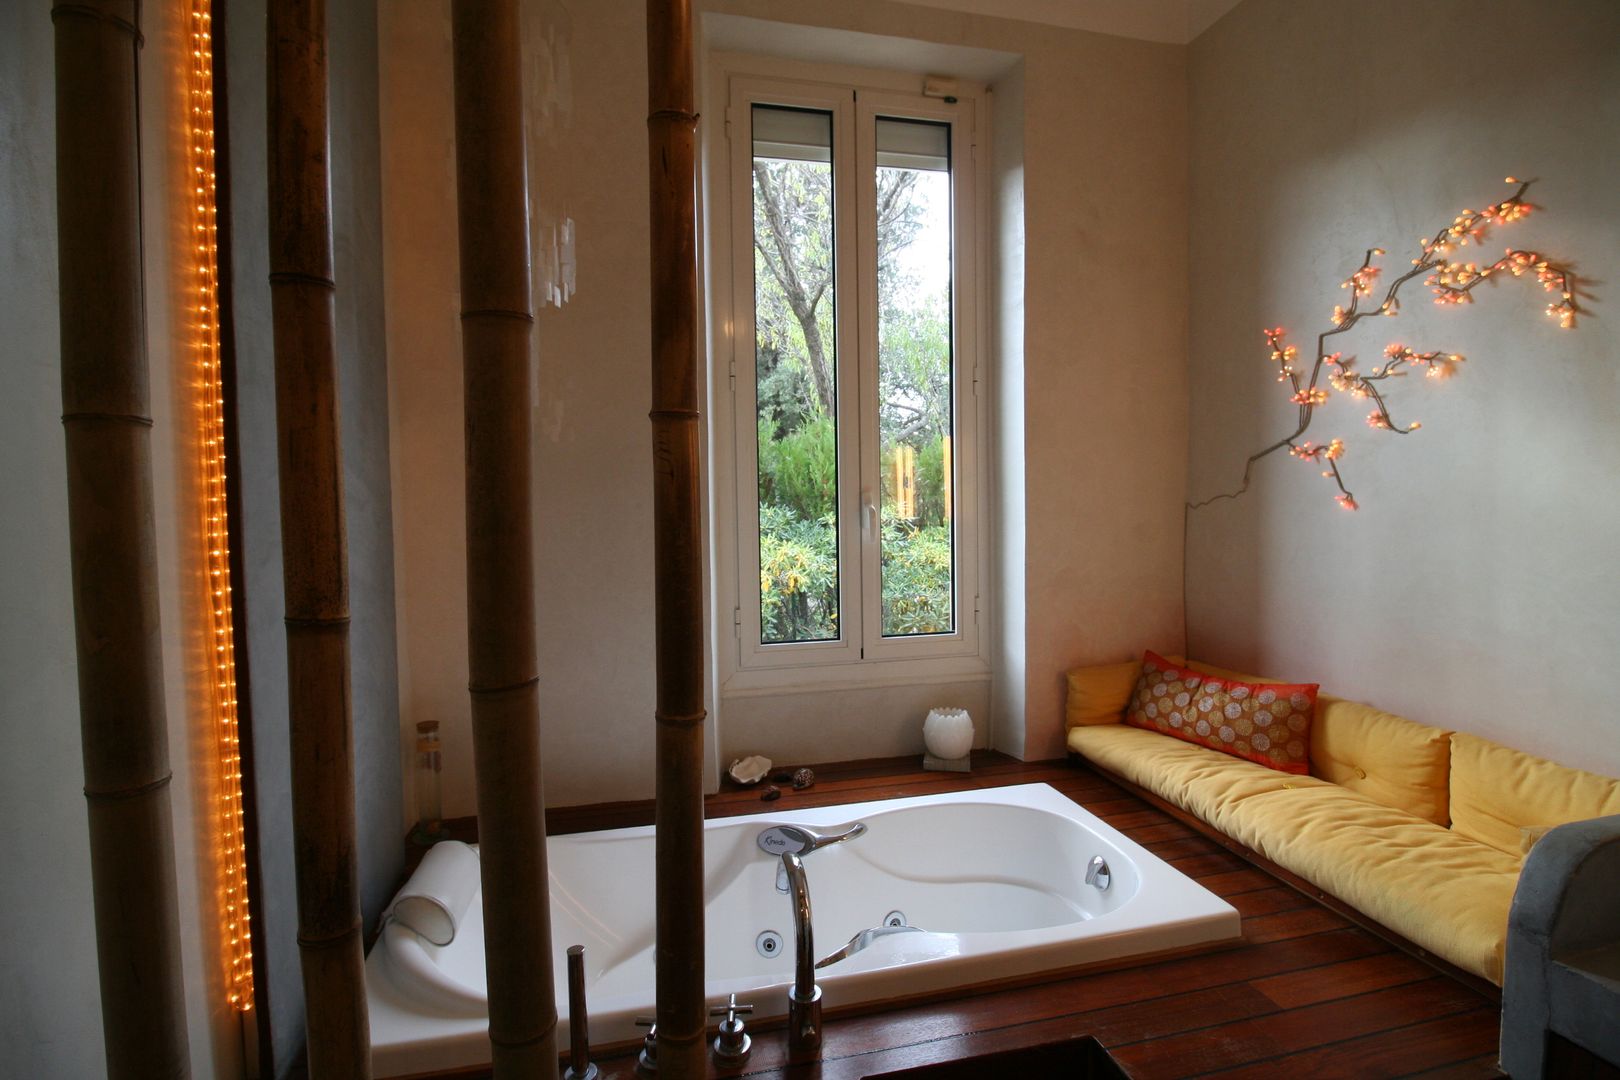 Salle de bain avec vue sur la verdure, LM Interieur Design LM Interieur Design Kamar Mandi Gaya Asia Bambu Green